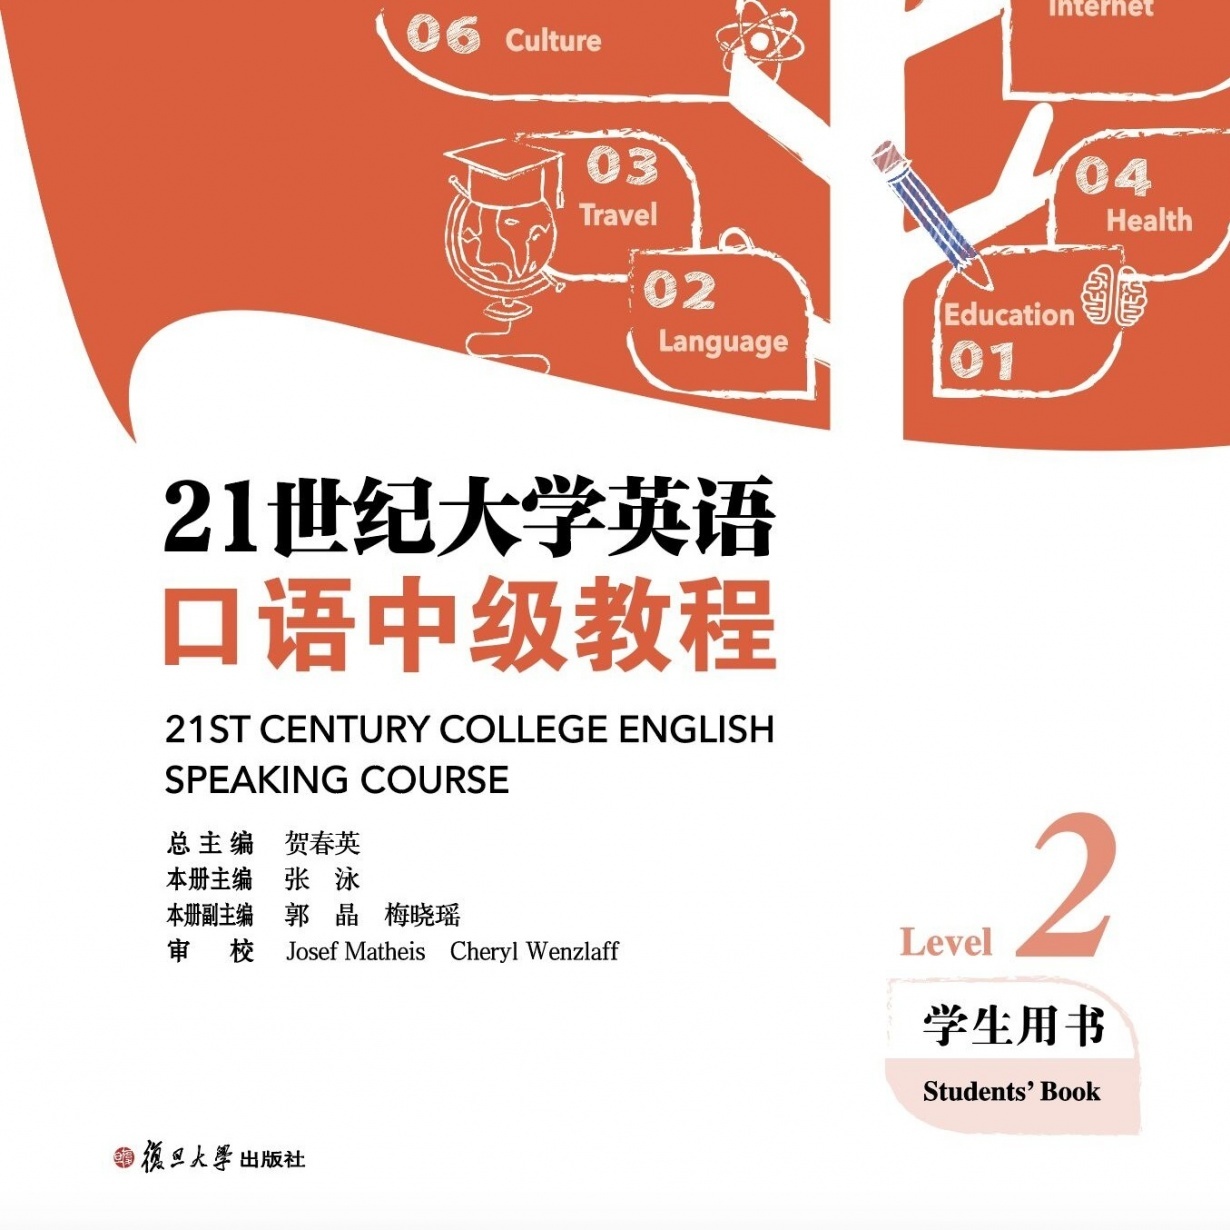 【视听包】21世纪大学英语口语中级教程（学生用书）.mp3.mp4